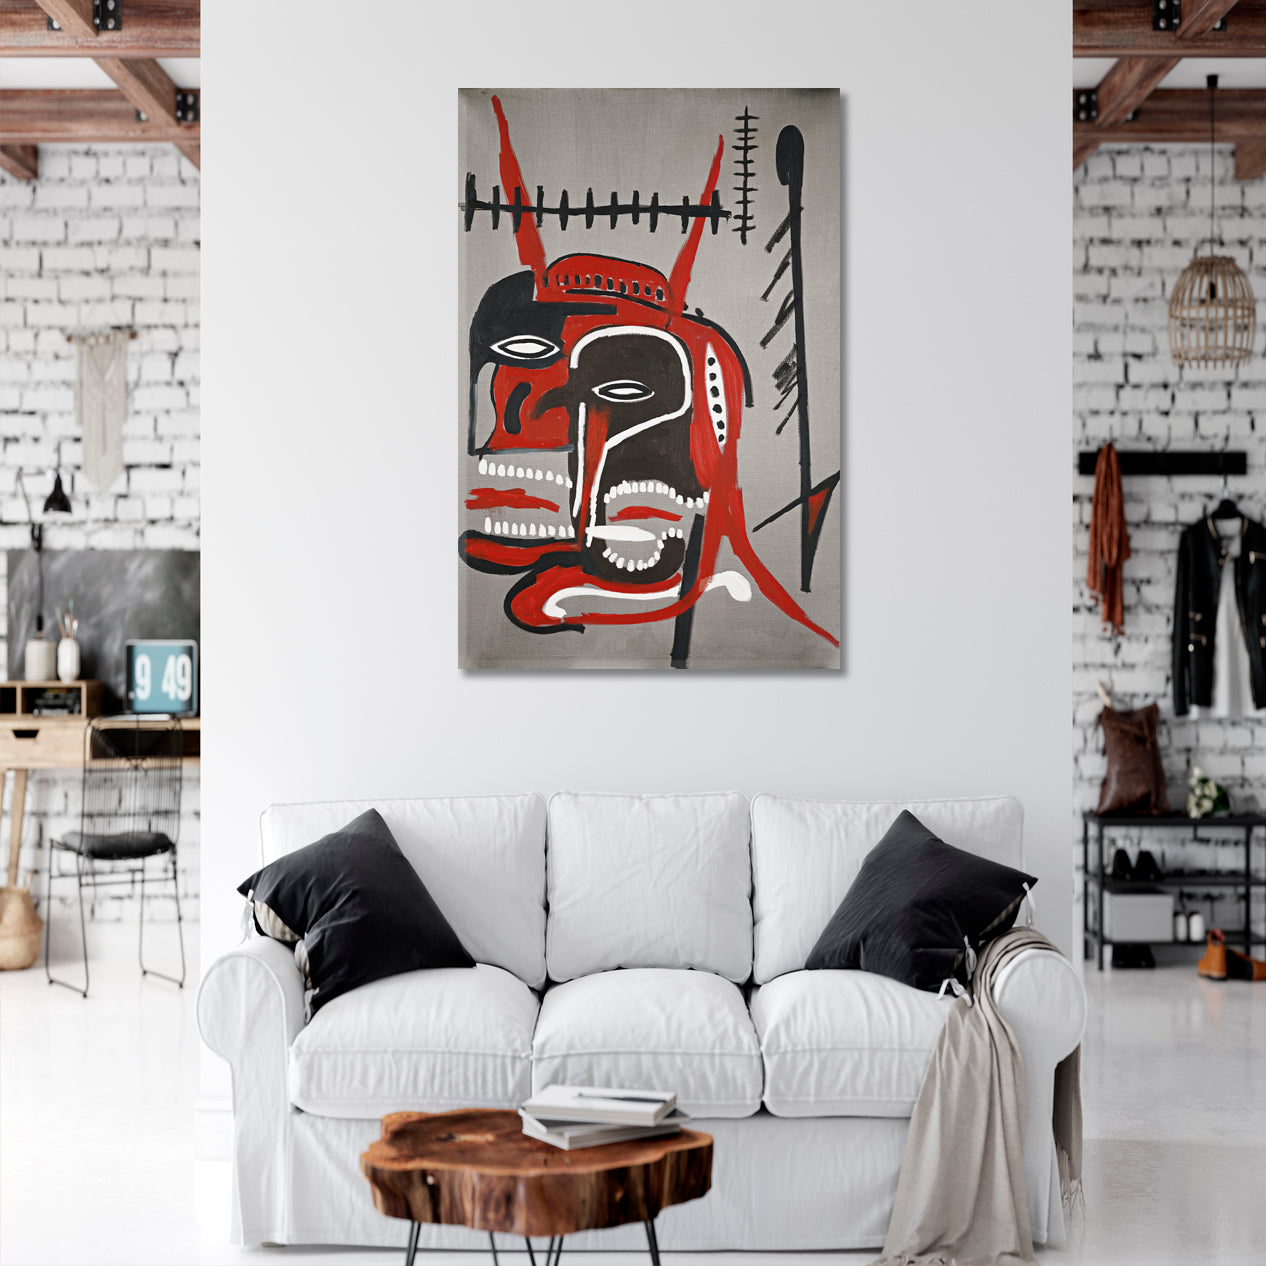 BASQUIAT STYLE HEADS Basquiat Sculs Canvas Print Wall Art - Vertical Contemporary Art Artesty 1 Panel 16"x24" 